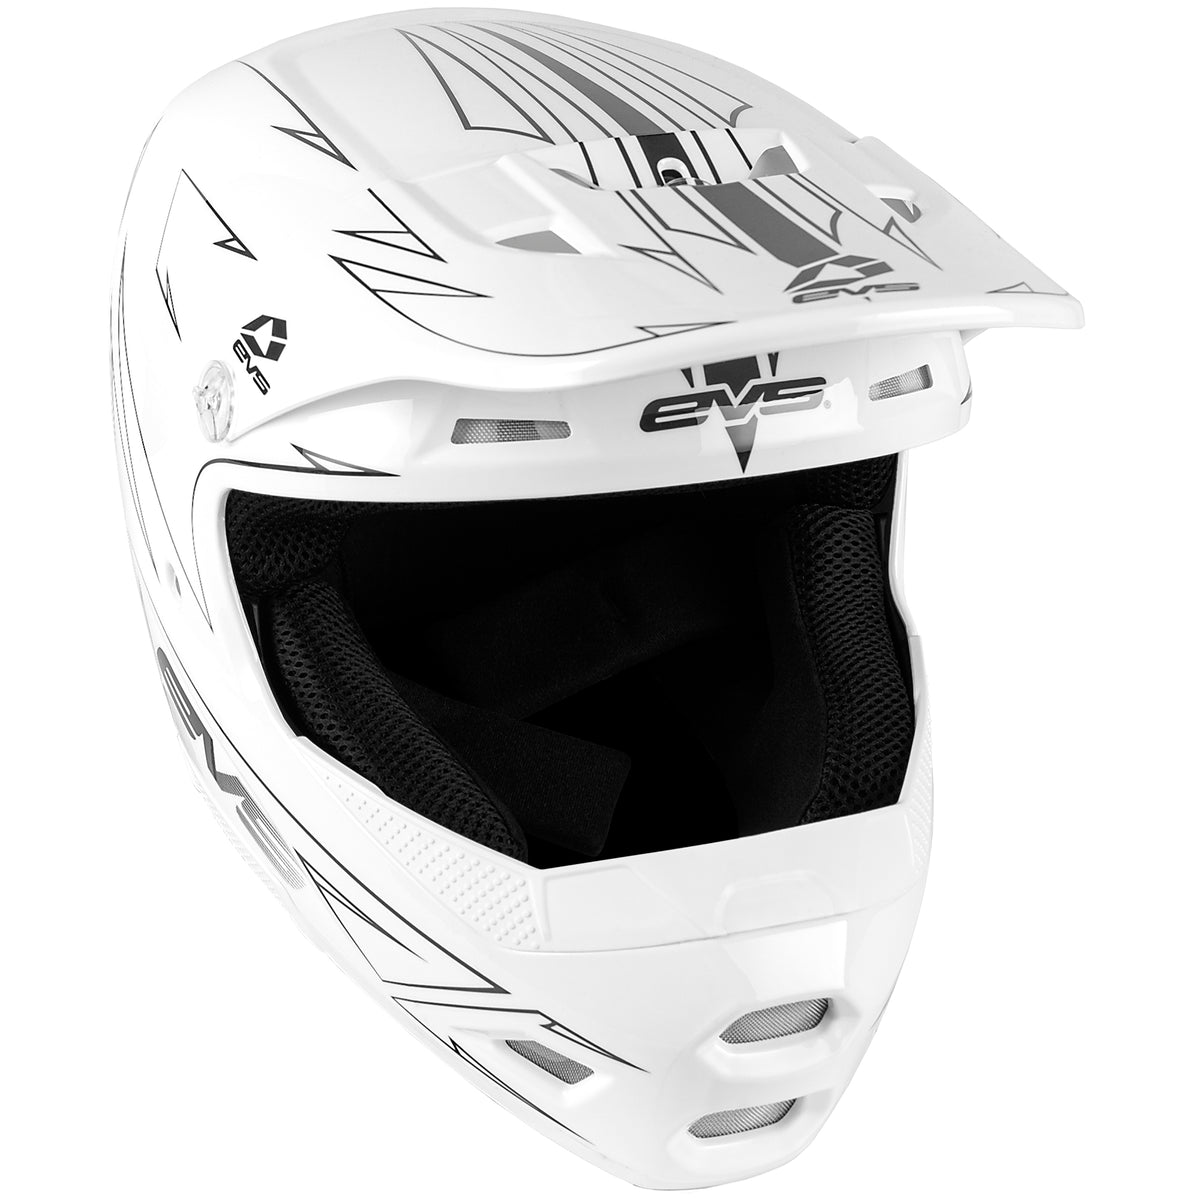 T3 Youth Helmet - Pinner White - EVS Sports